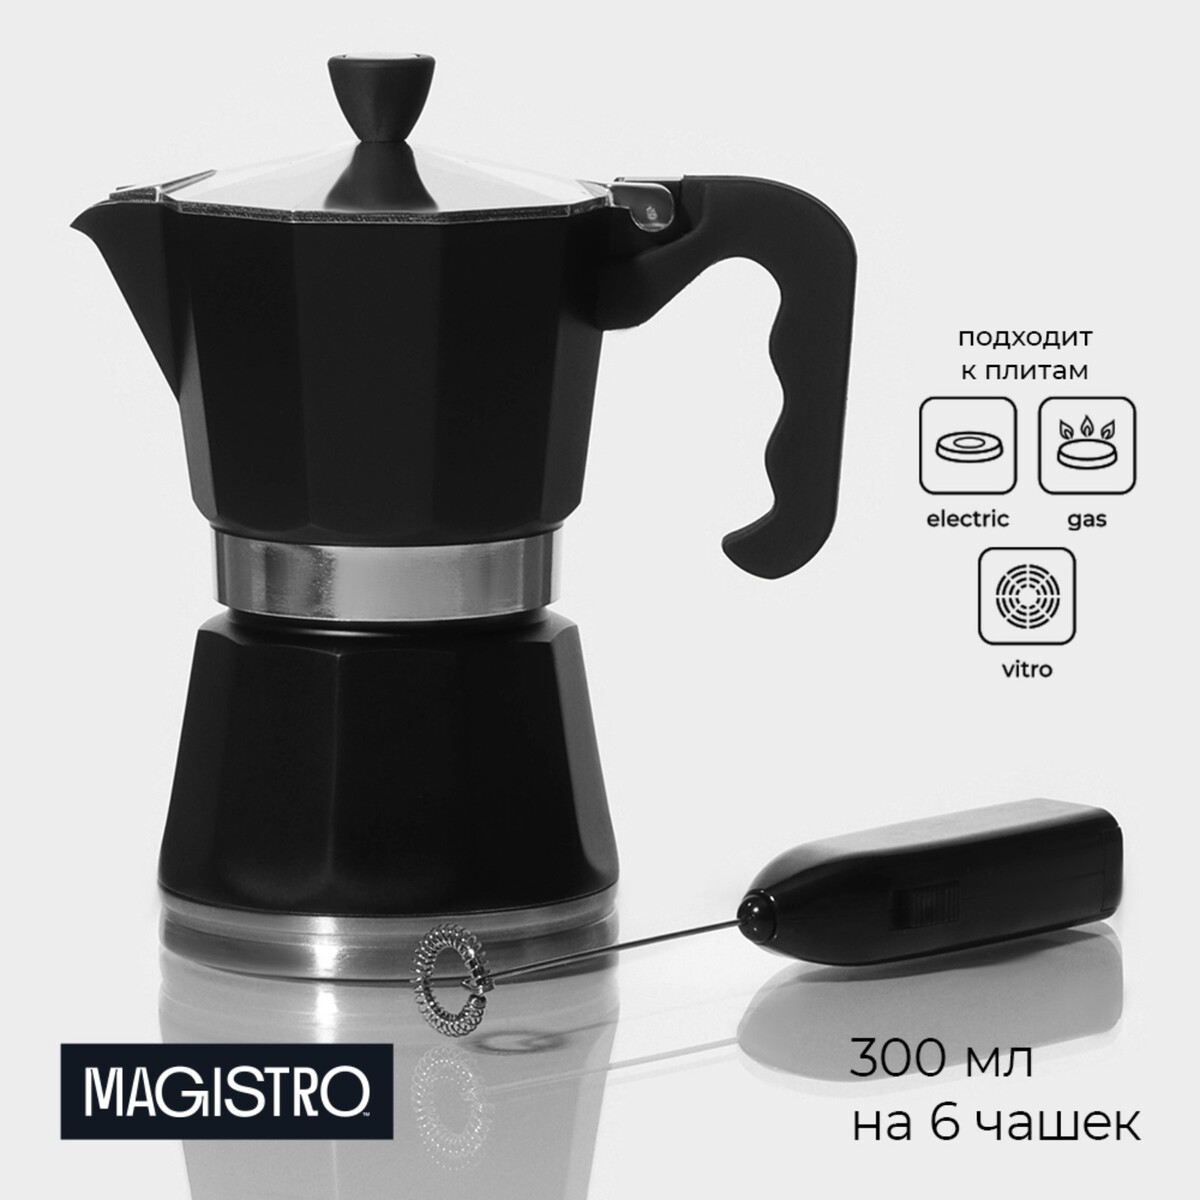 Кофеварка гейзерная с капучинатором magistro blackout, 2 предмета, 300 мл, цвет черный